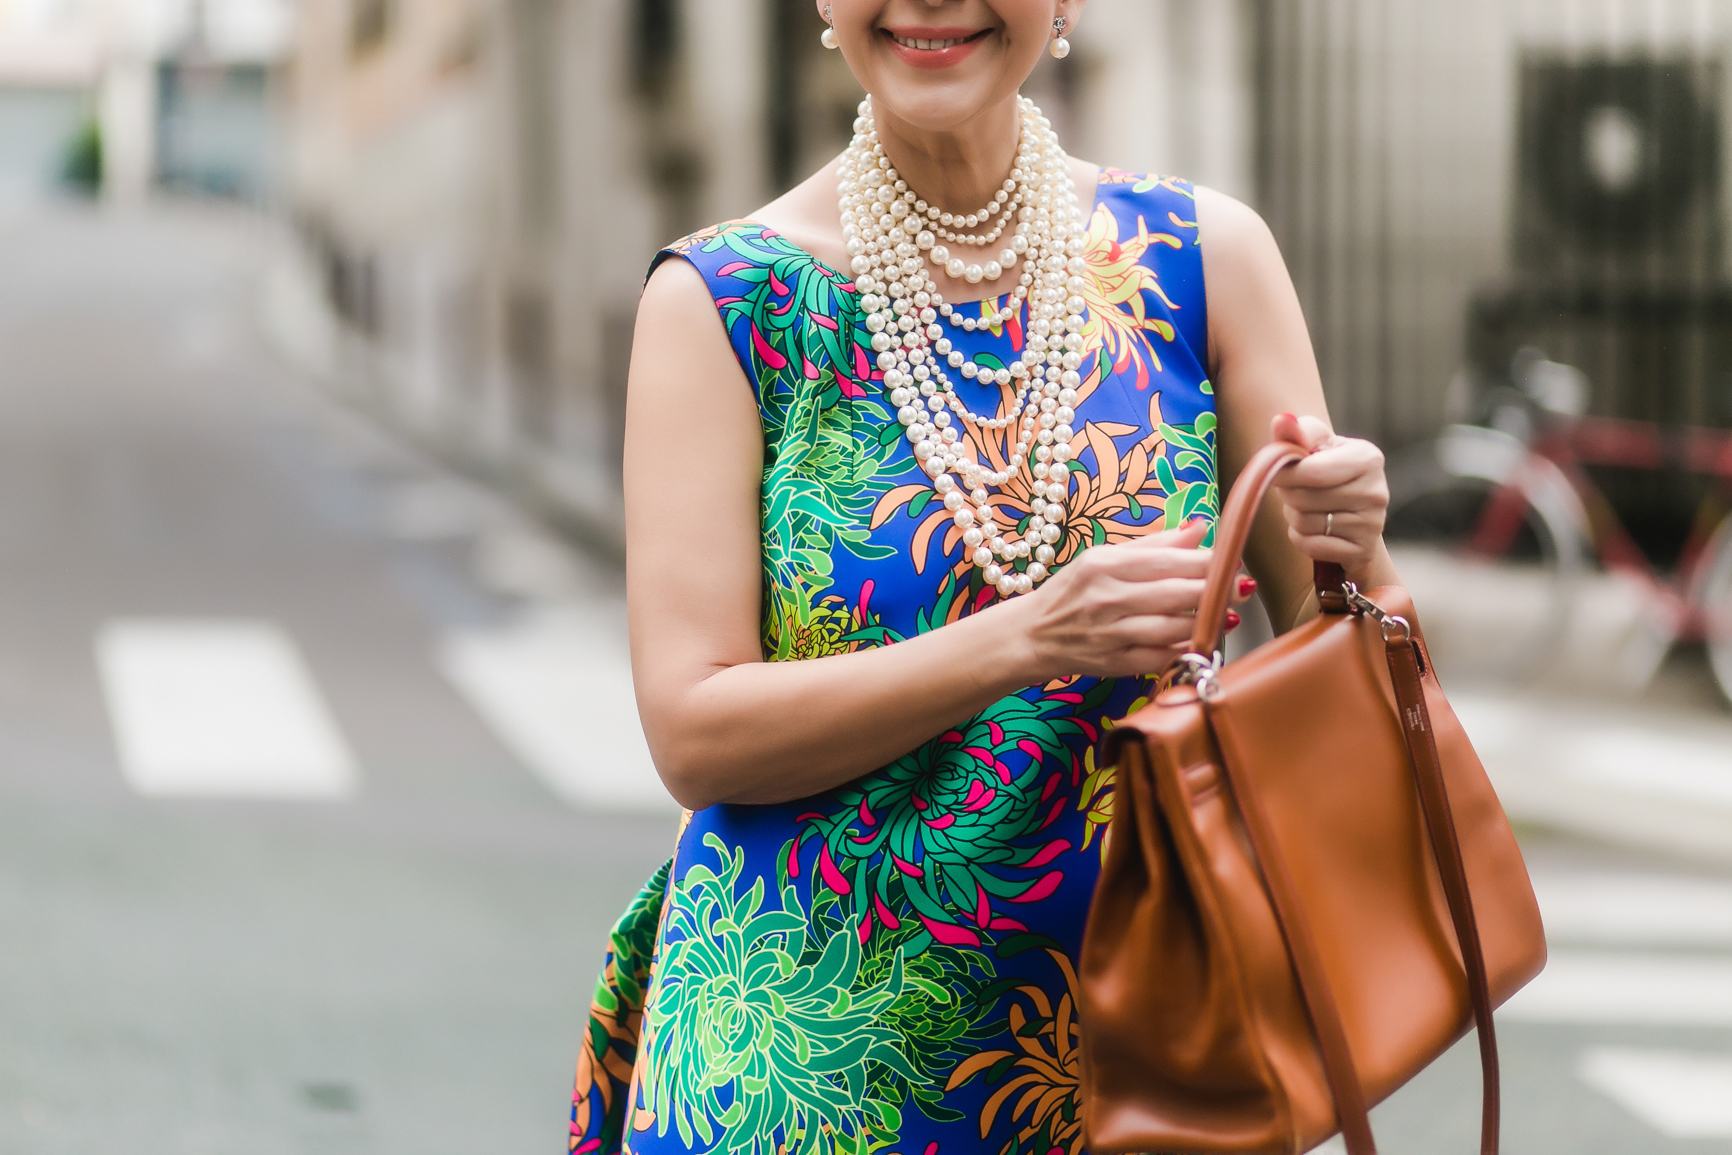 Tại Paris, Diễm My luôn tạo nên sự chú ý khi sải bước trên đường phố với những trang phục tối giản nhưng vô cùng sang trọng. Dù chọn những phụ kiện đắt đỏ của Chanel nhưng với trang phục, Diễm My luôn tự tin mặc thiết kế Việt của NTK Đỗ Mạnh Cường.